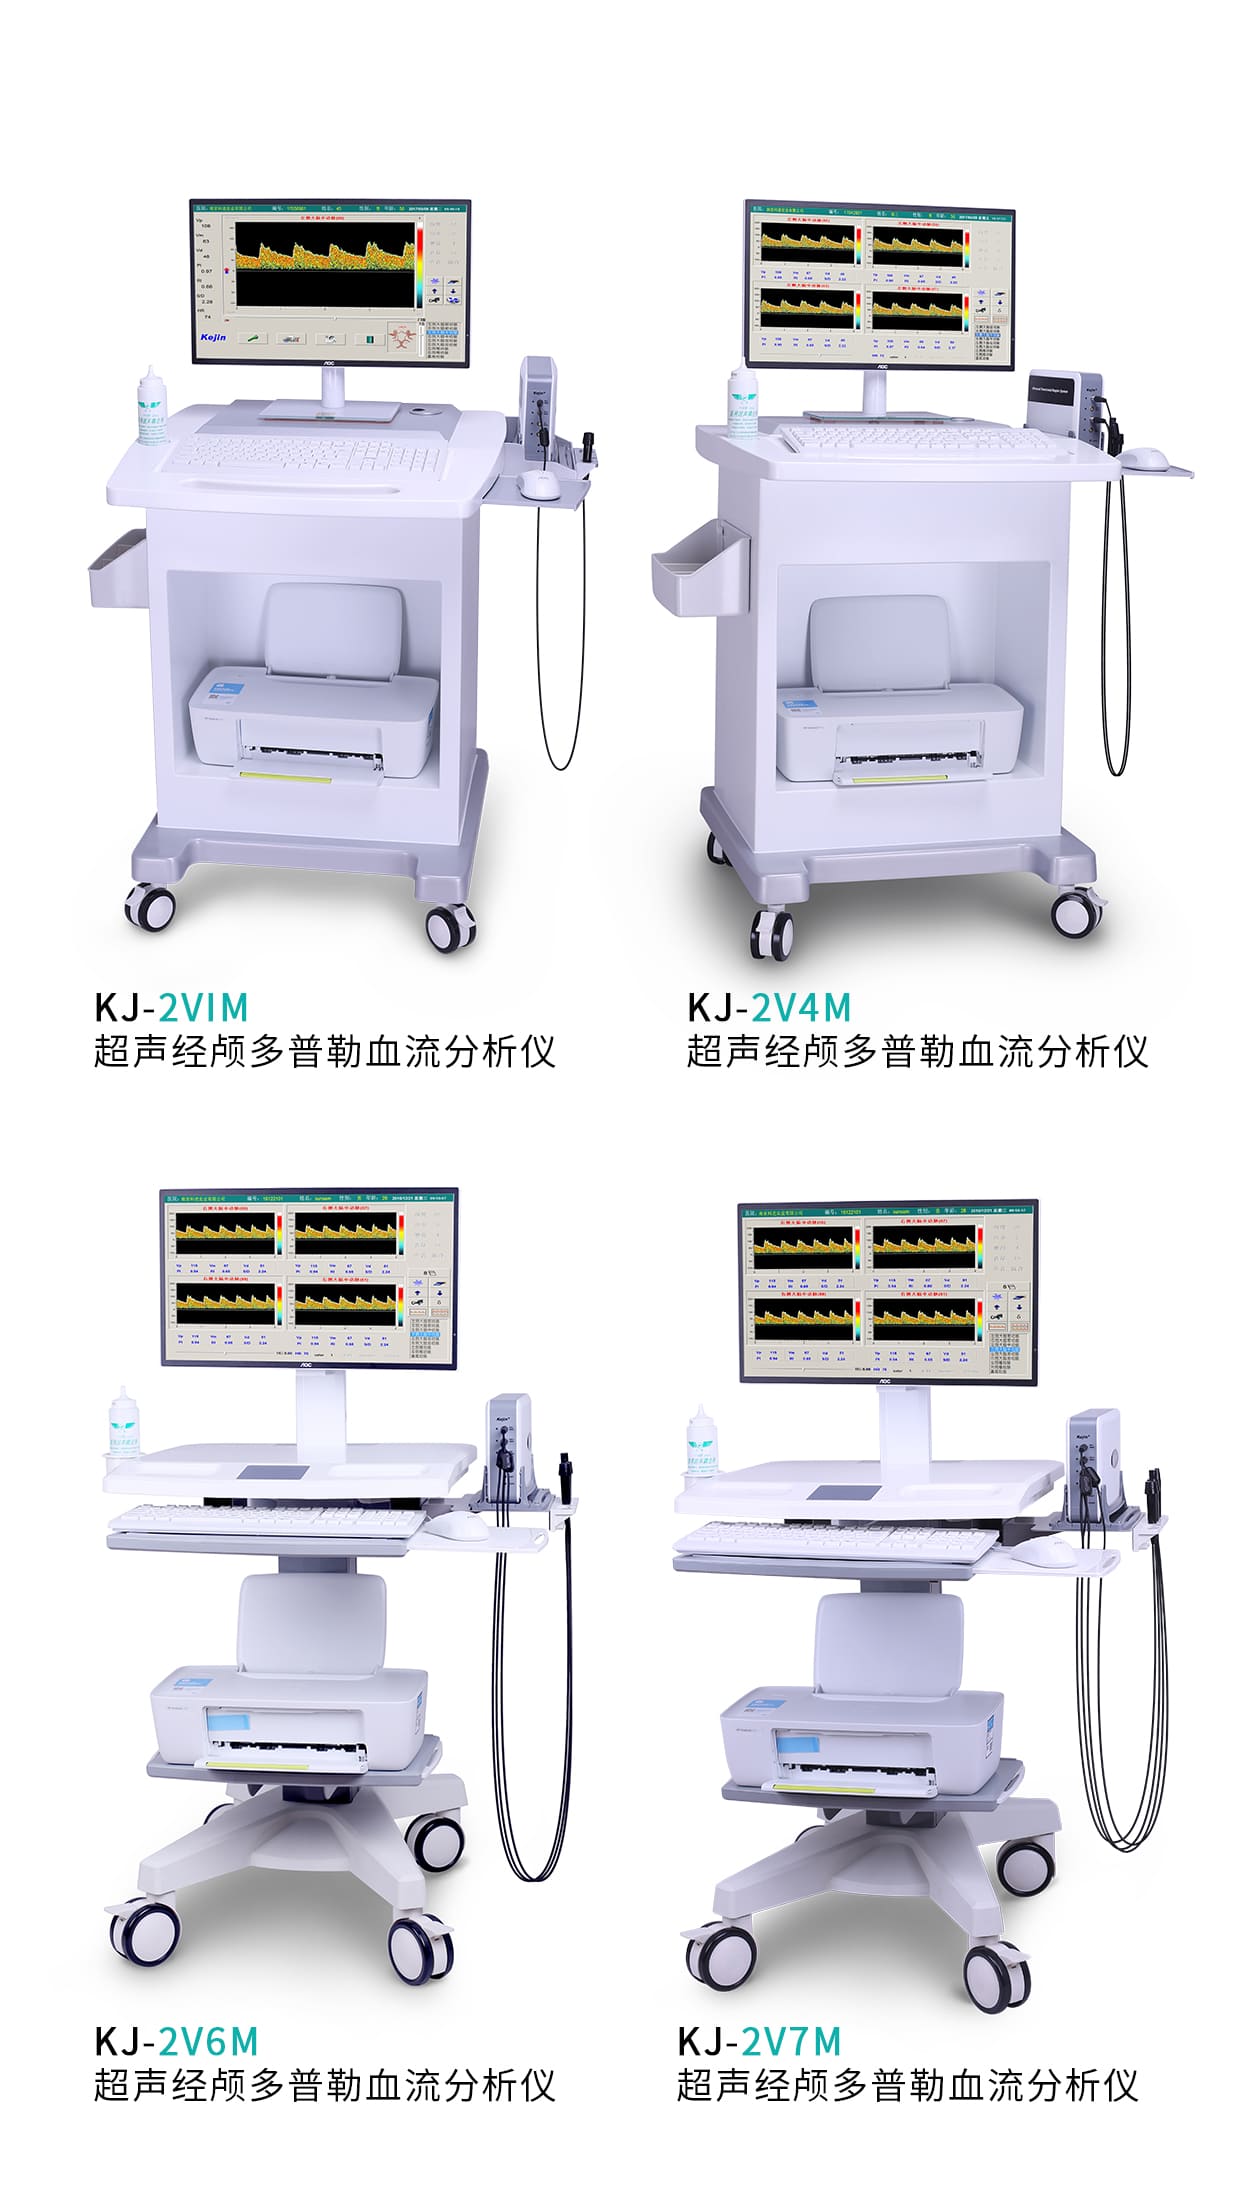 武汉国际医疗仪器设备展览会